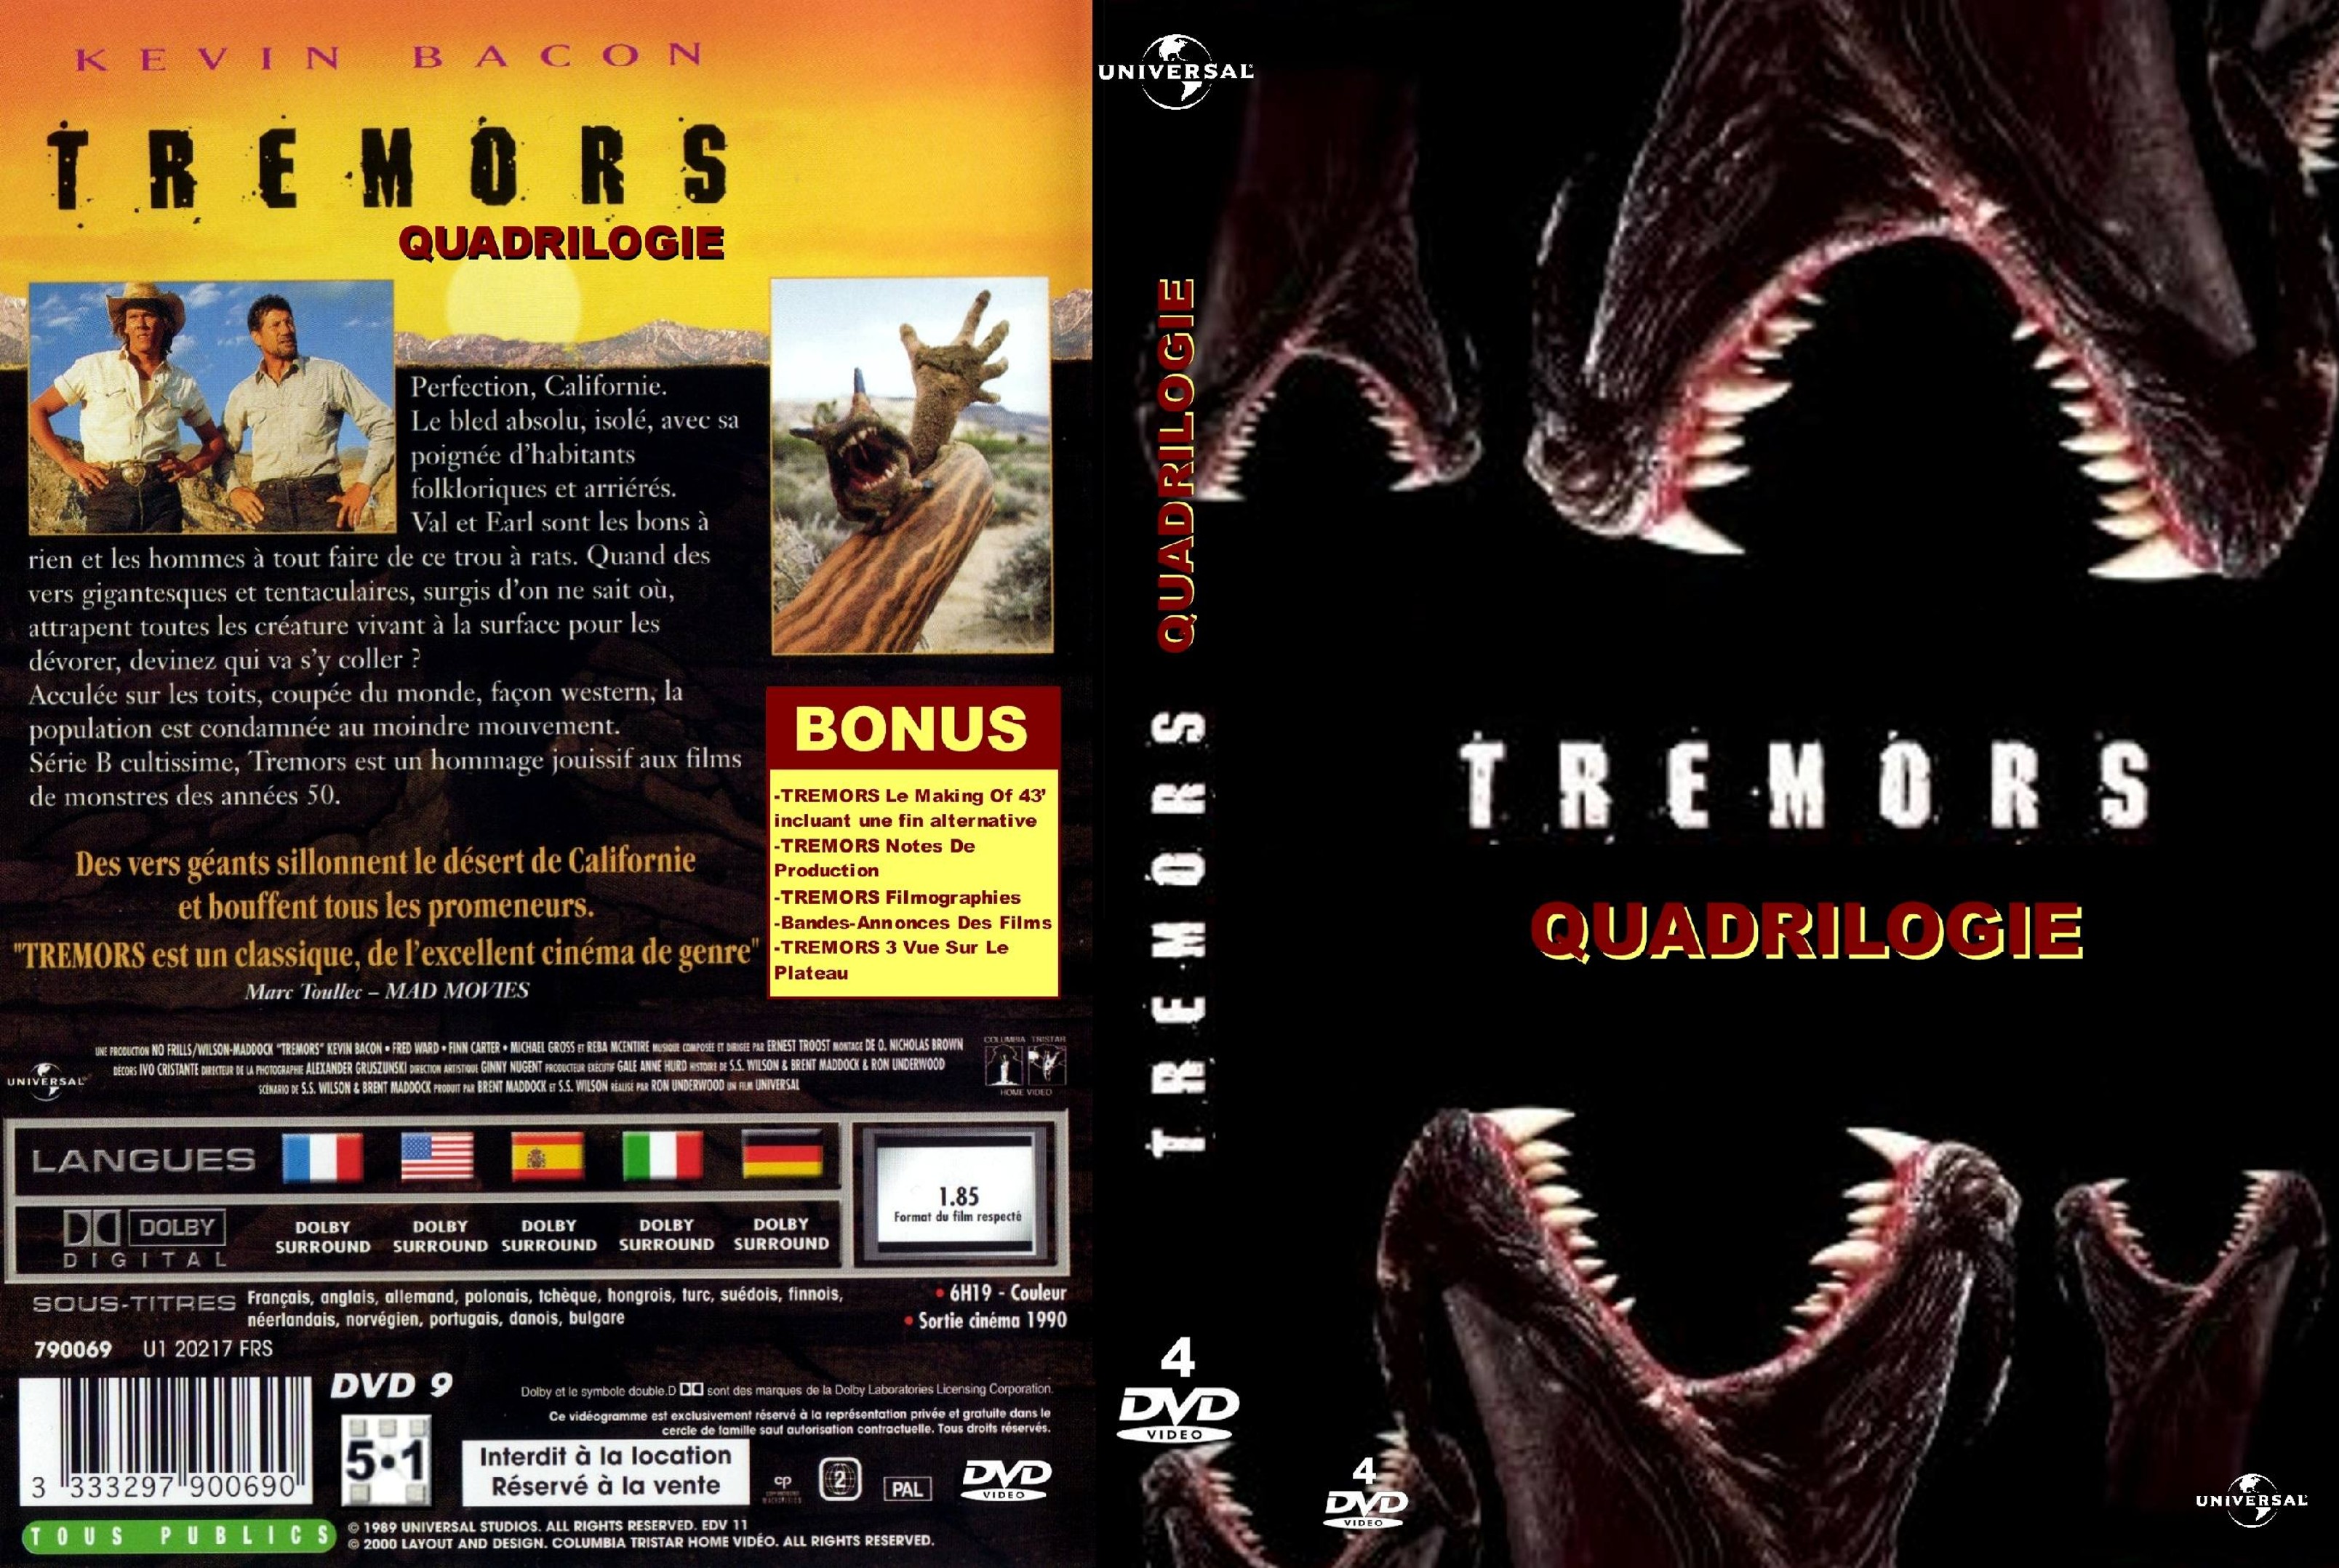 Jaquette DVD Tremors Quadrilogie custom